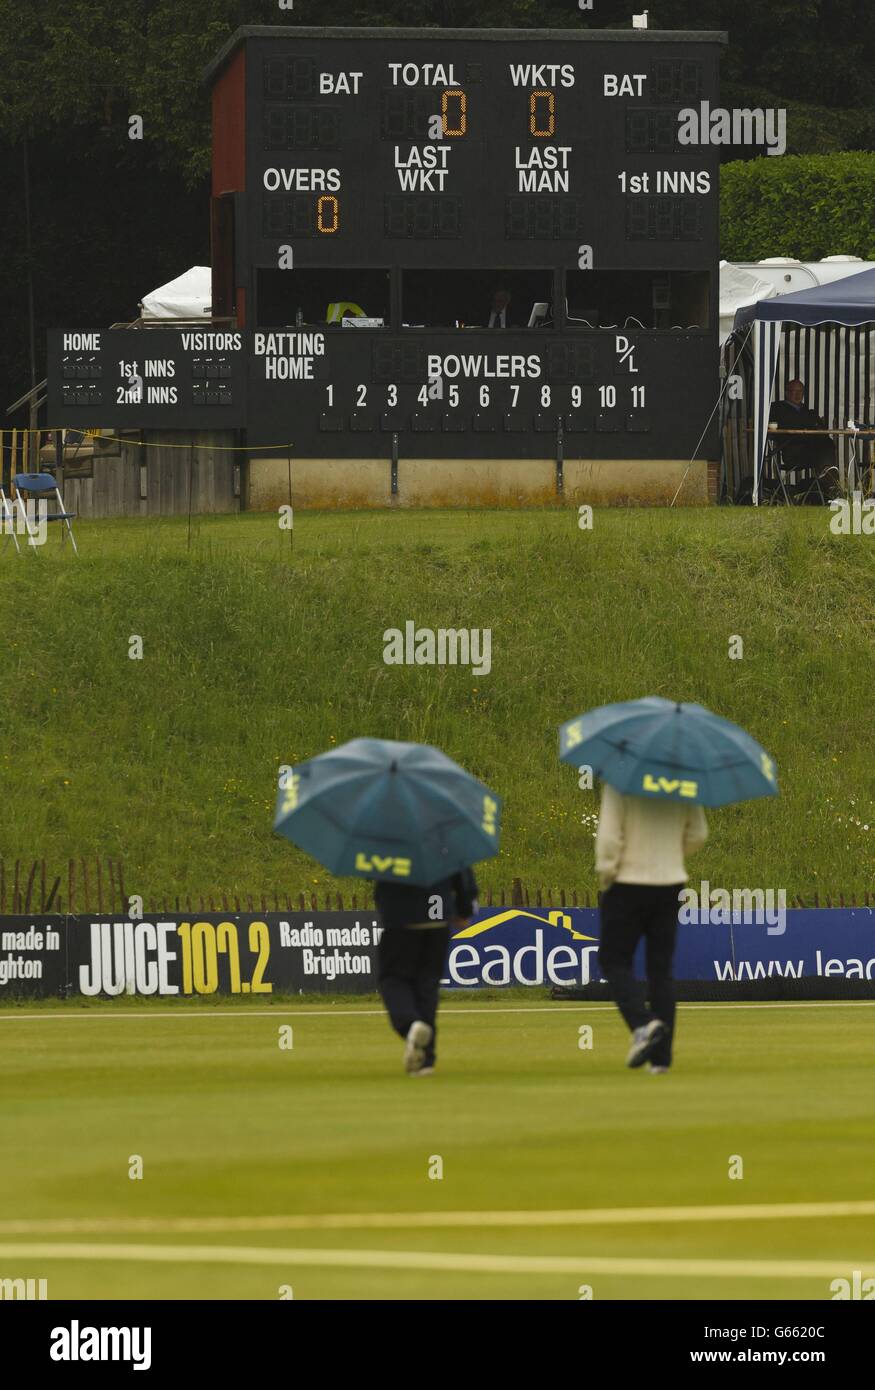 Les arbitres du match inspectent le cricket à Arundel Cricket Club, West Sussex où la pluie a retardé le début du LV= County Championship Division One match entre Sussex et Surrey. Banque D'Images